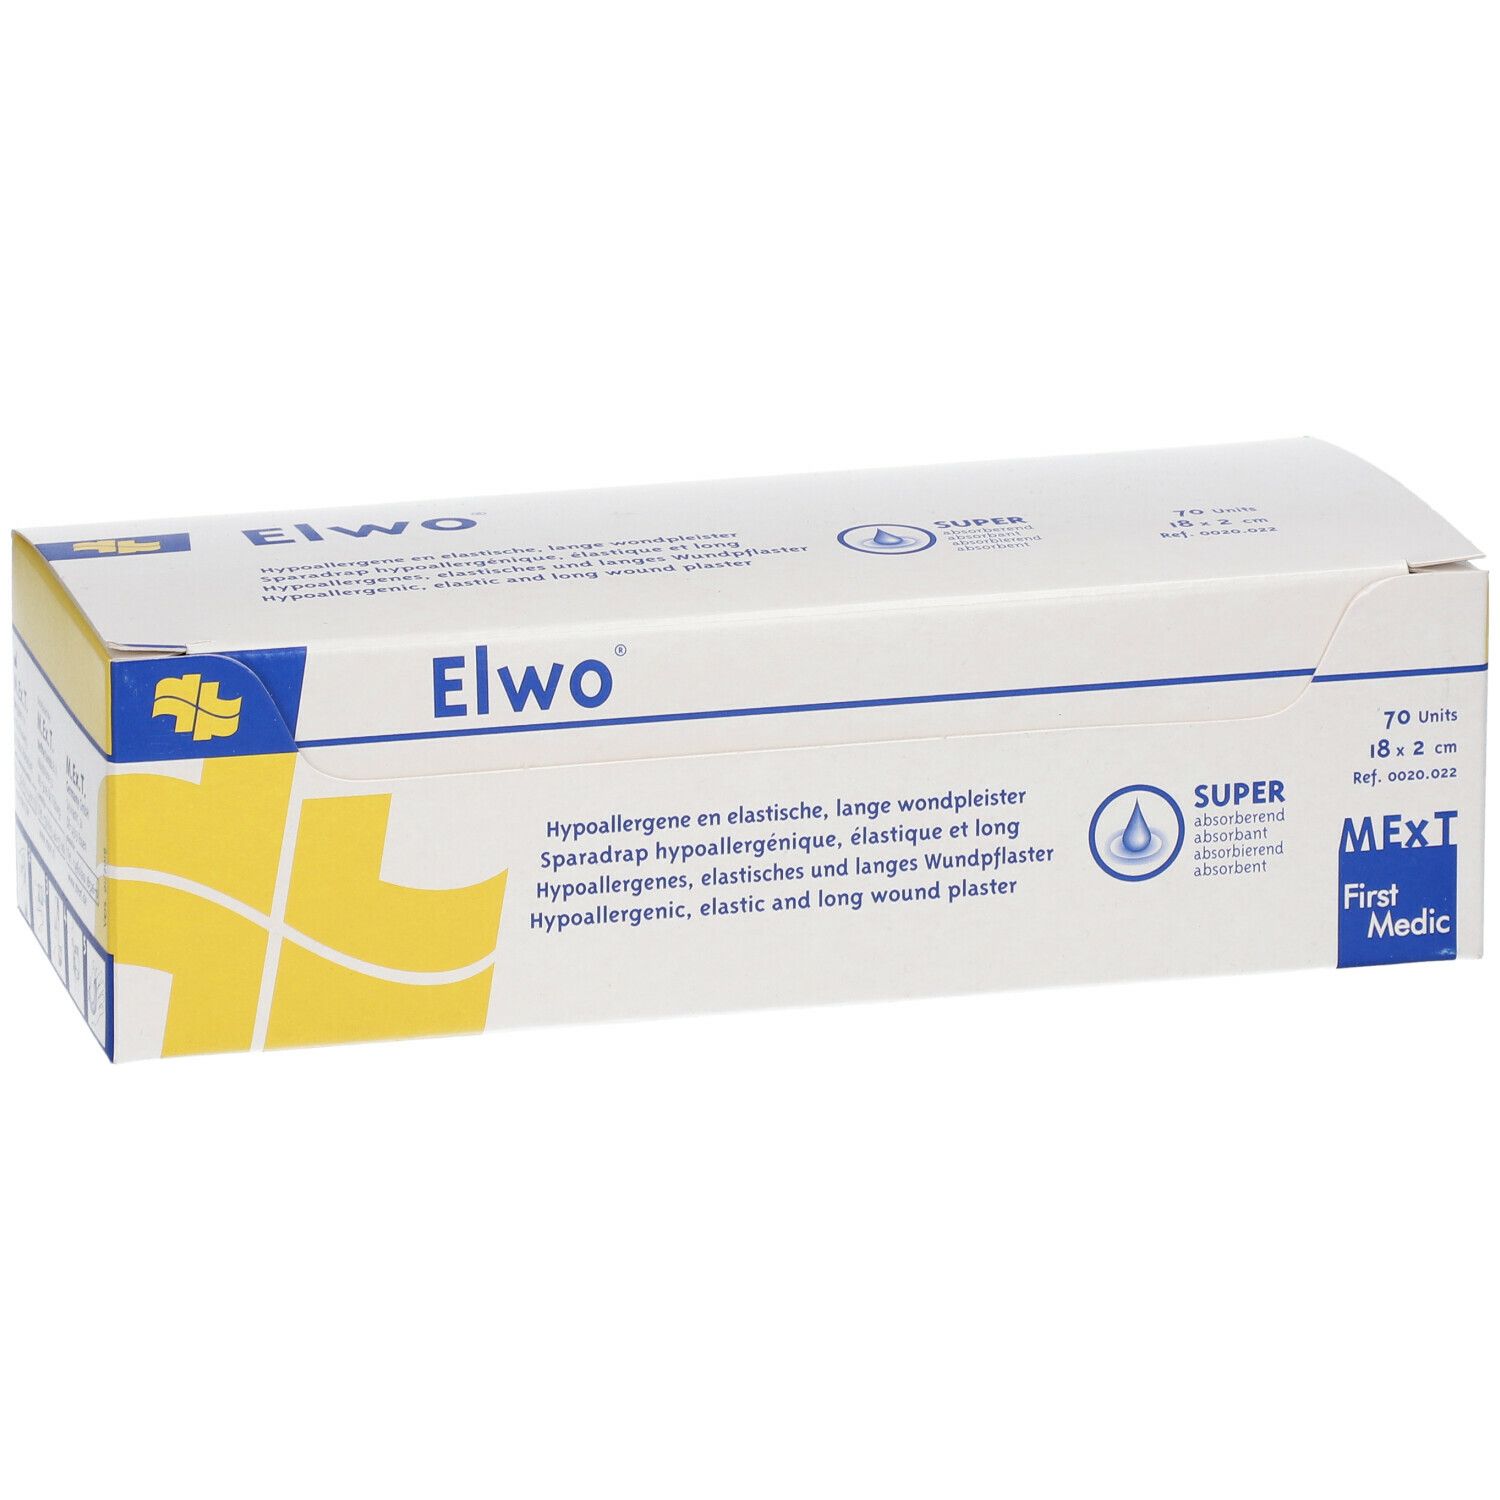 Elwo® elastisches und hypoallergenes Wundpflaster 18 x 2 cm